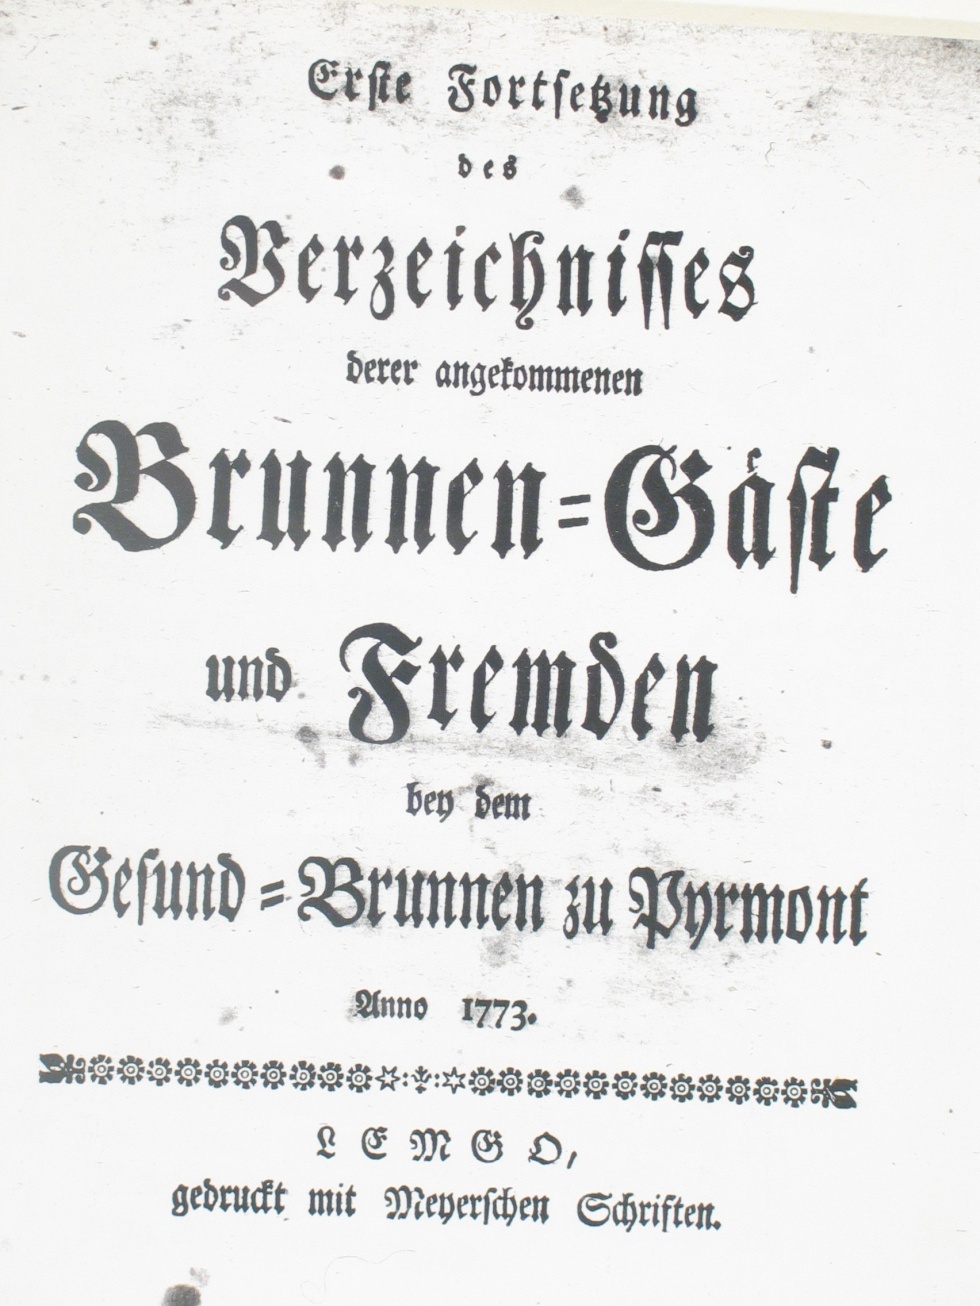 Gesund-Brunnen zu Pyrmont Anno 1773 - Deckblatt (Museum im Schloss Bad Pyrmont CC BY-NC-SA)